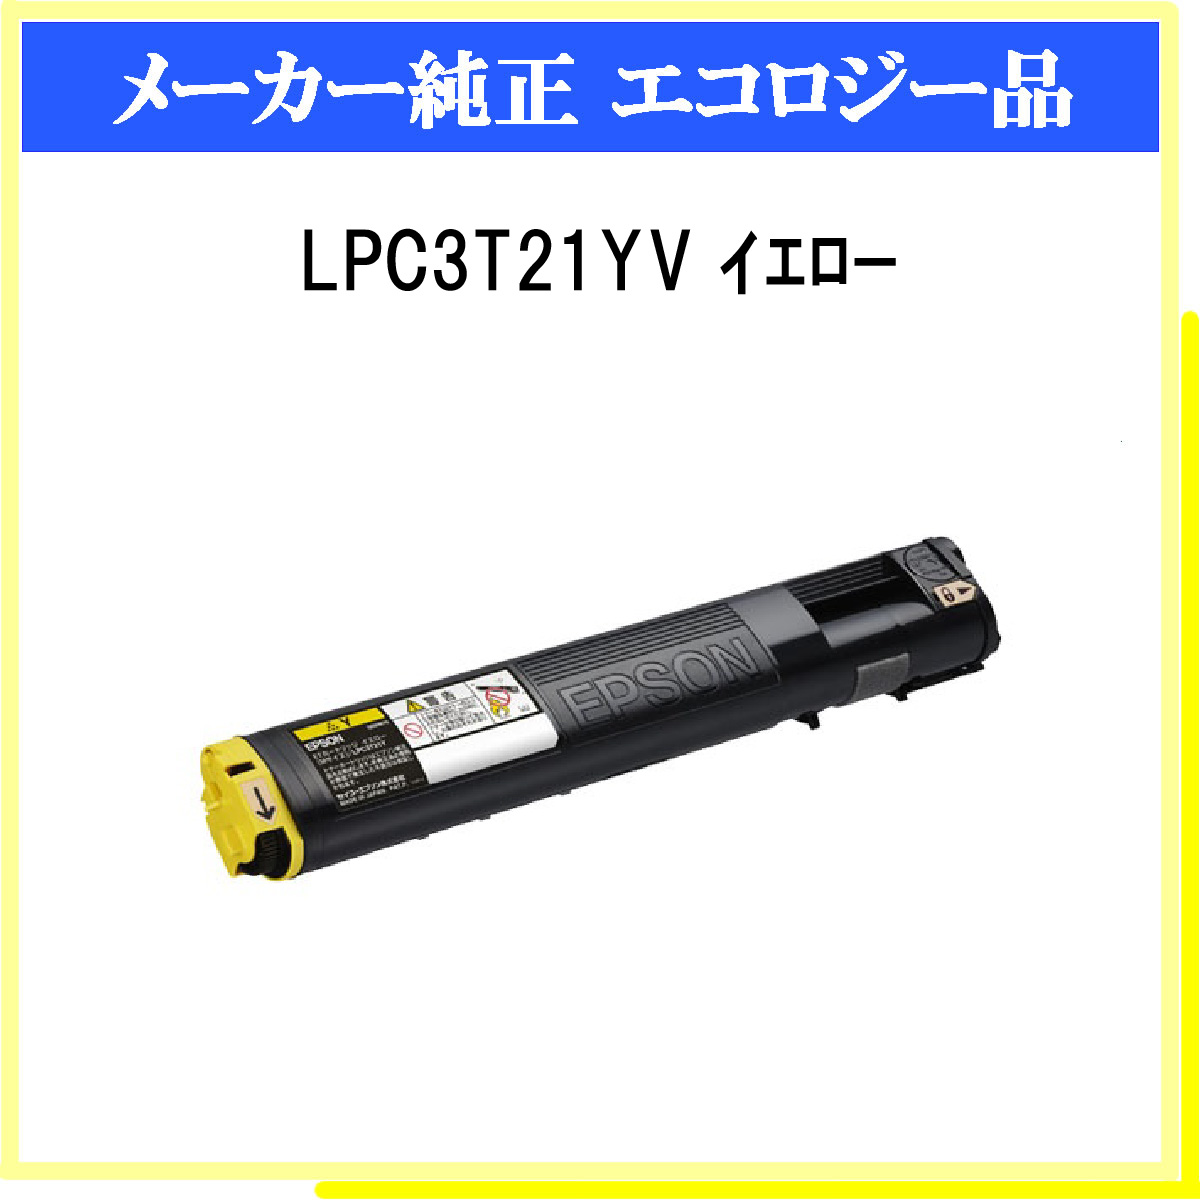 ストアー EPSON トナー LPC3T21CV l-4988617121416